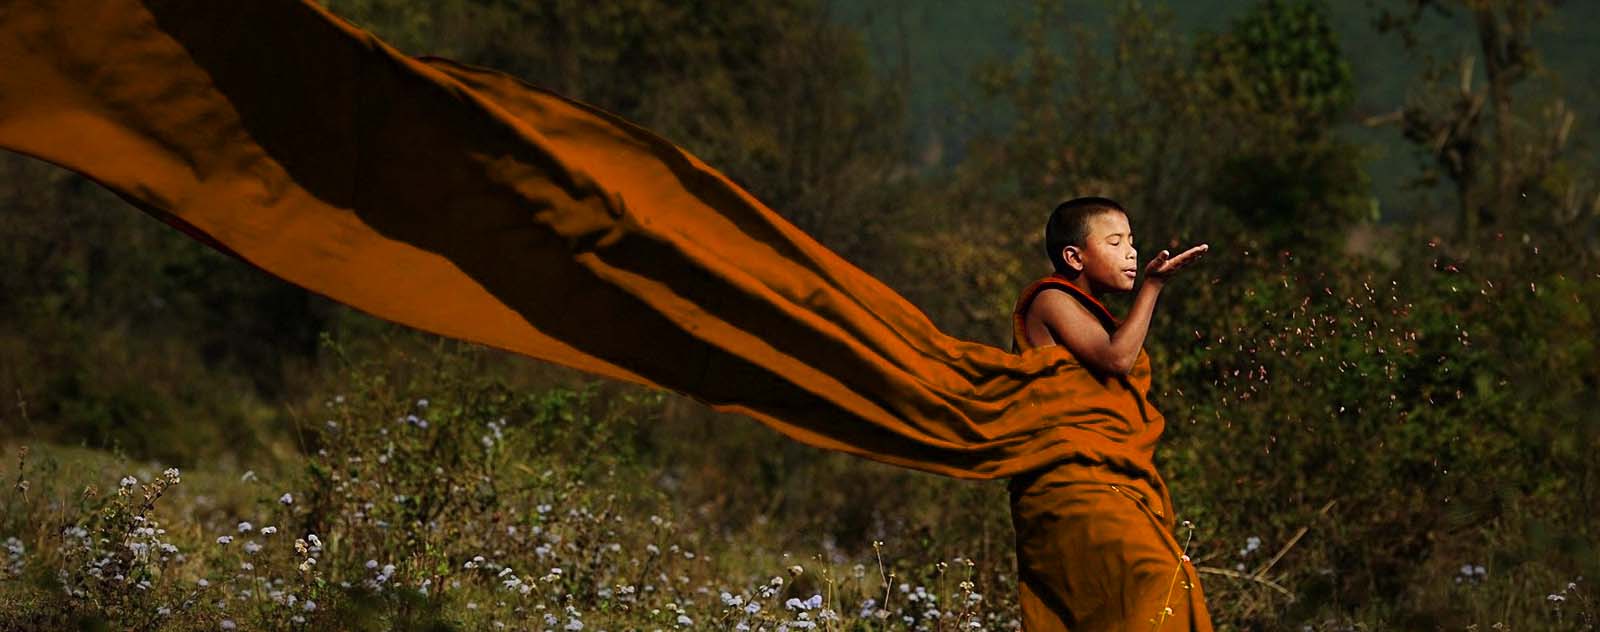 Pourquoi les Bouddhistes portent-ils des robes?